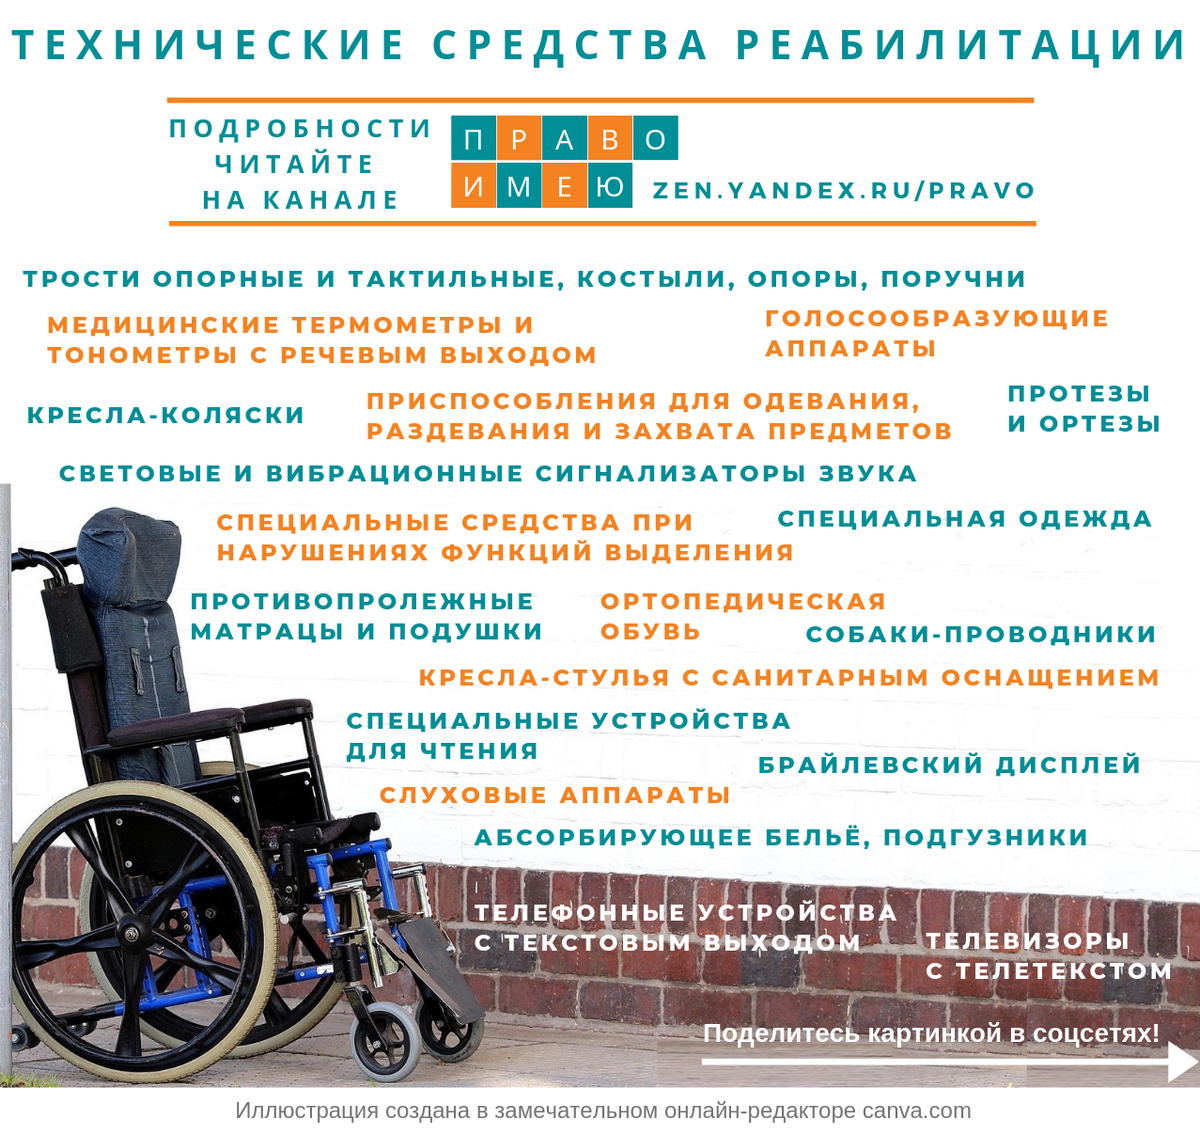 Технические средства реабилитации для инвалидов. Texnechiskiya sredstva reabilitasii. Список технические средства реабилитации для инвалидов. Инвалиды 1 группы в колясках. Помощник инвалида 1 группы